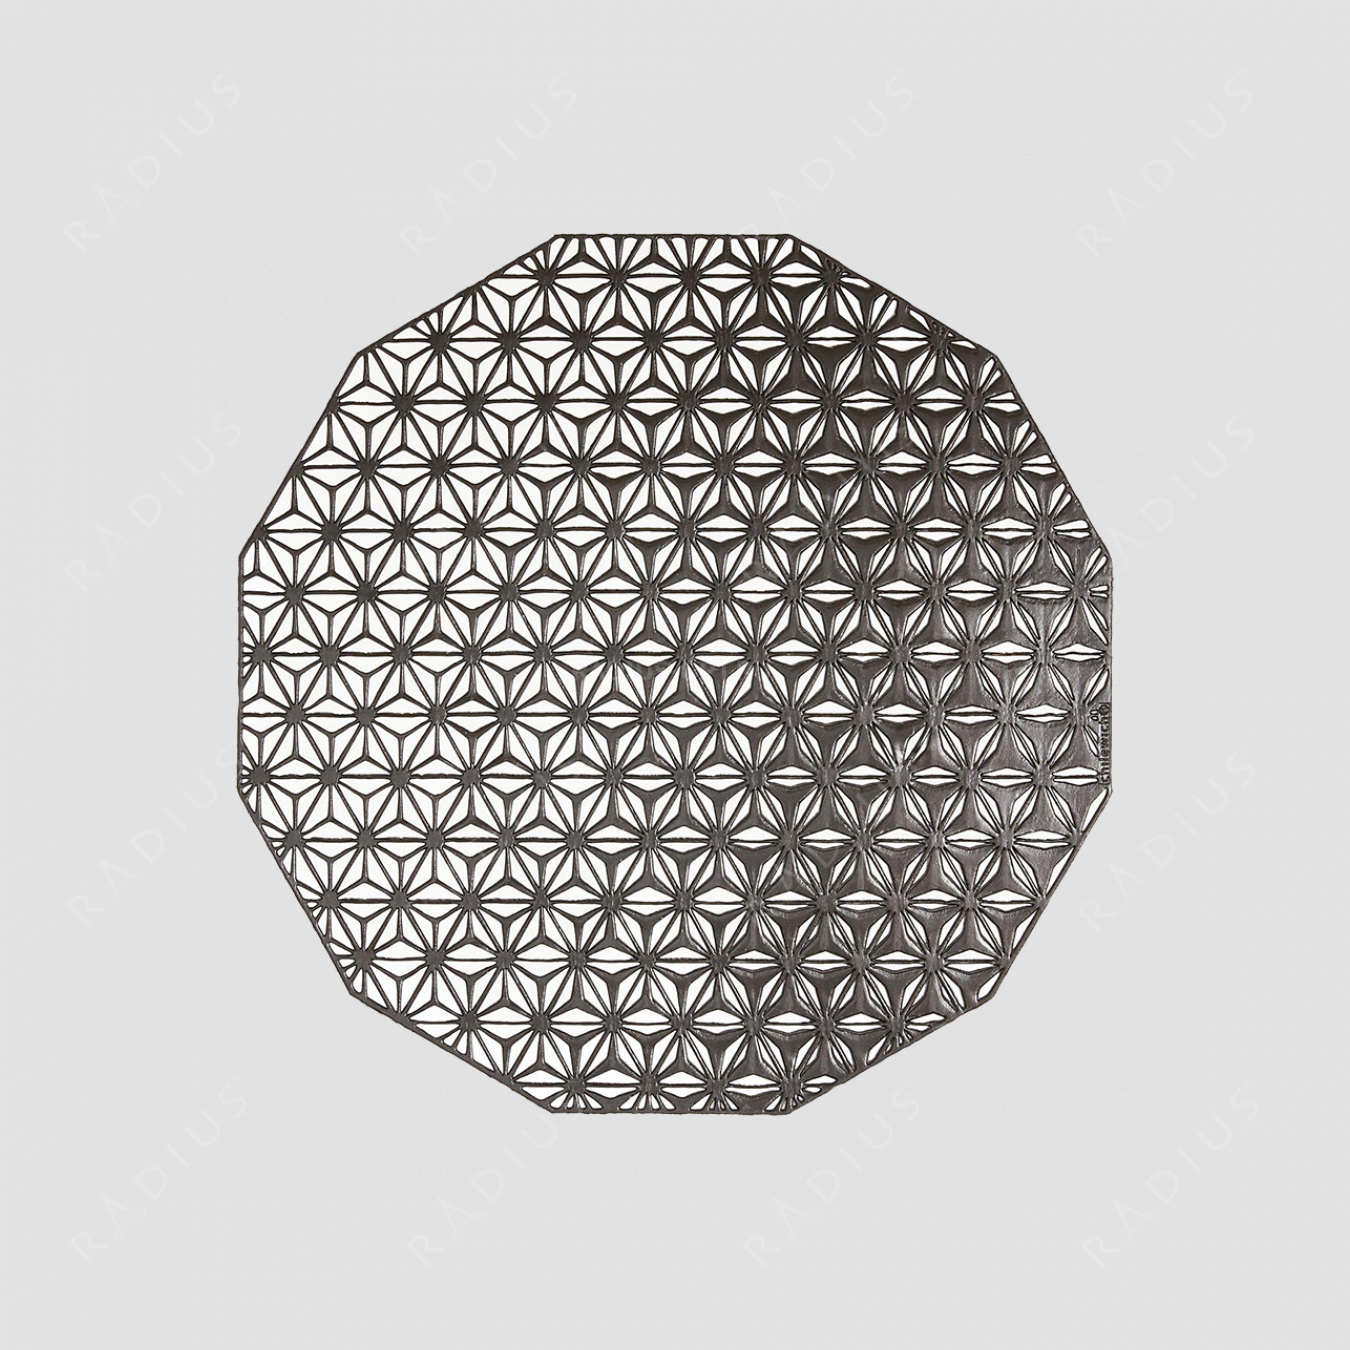 Салфетка подстановочная, диаметр 36 см, Black, винил, серия Kaleidoscope, CHILEWICH, США